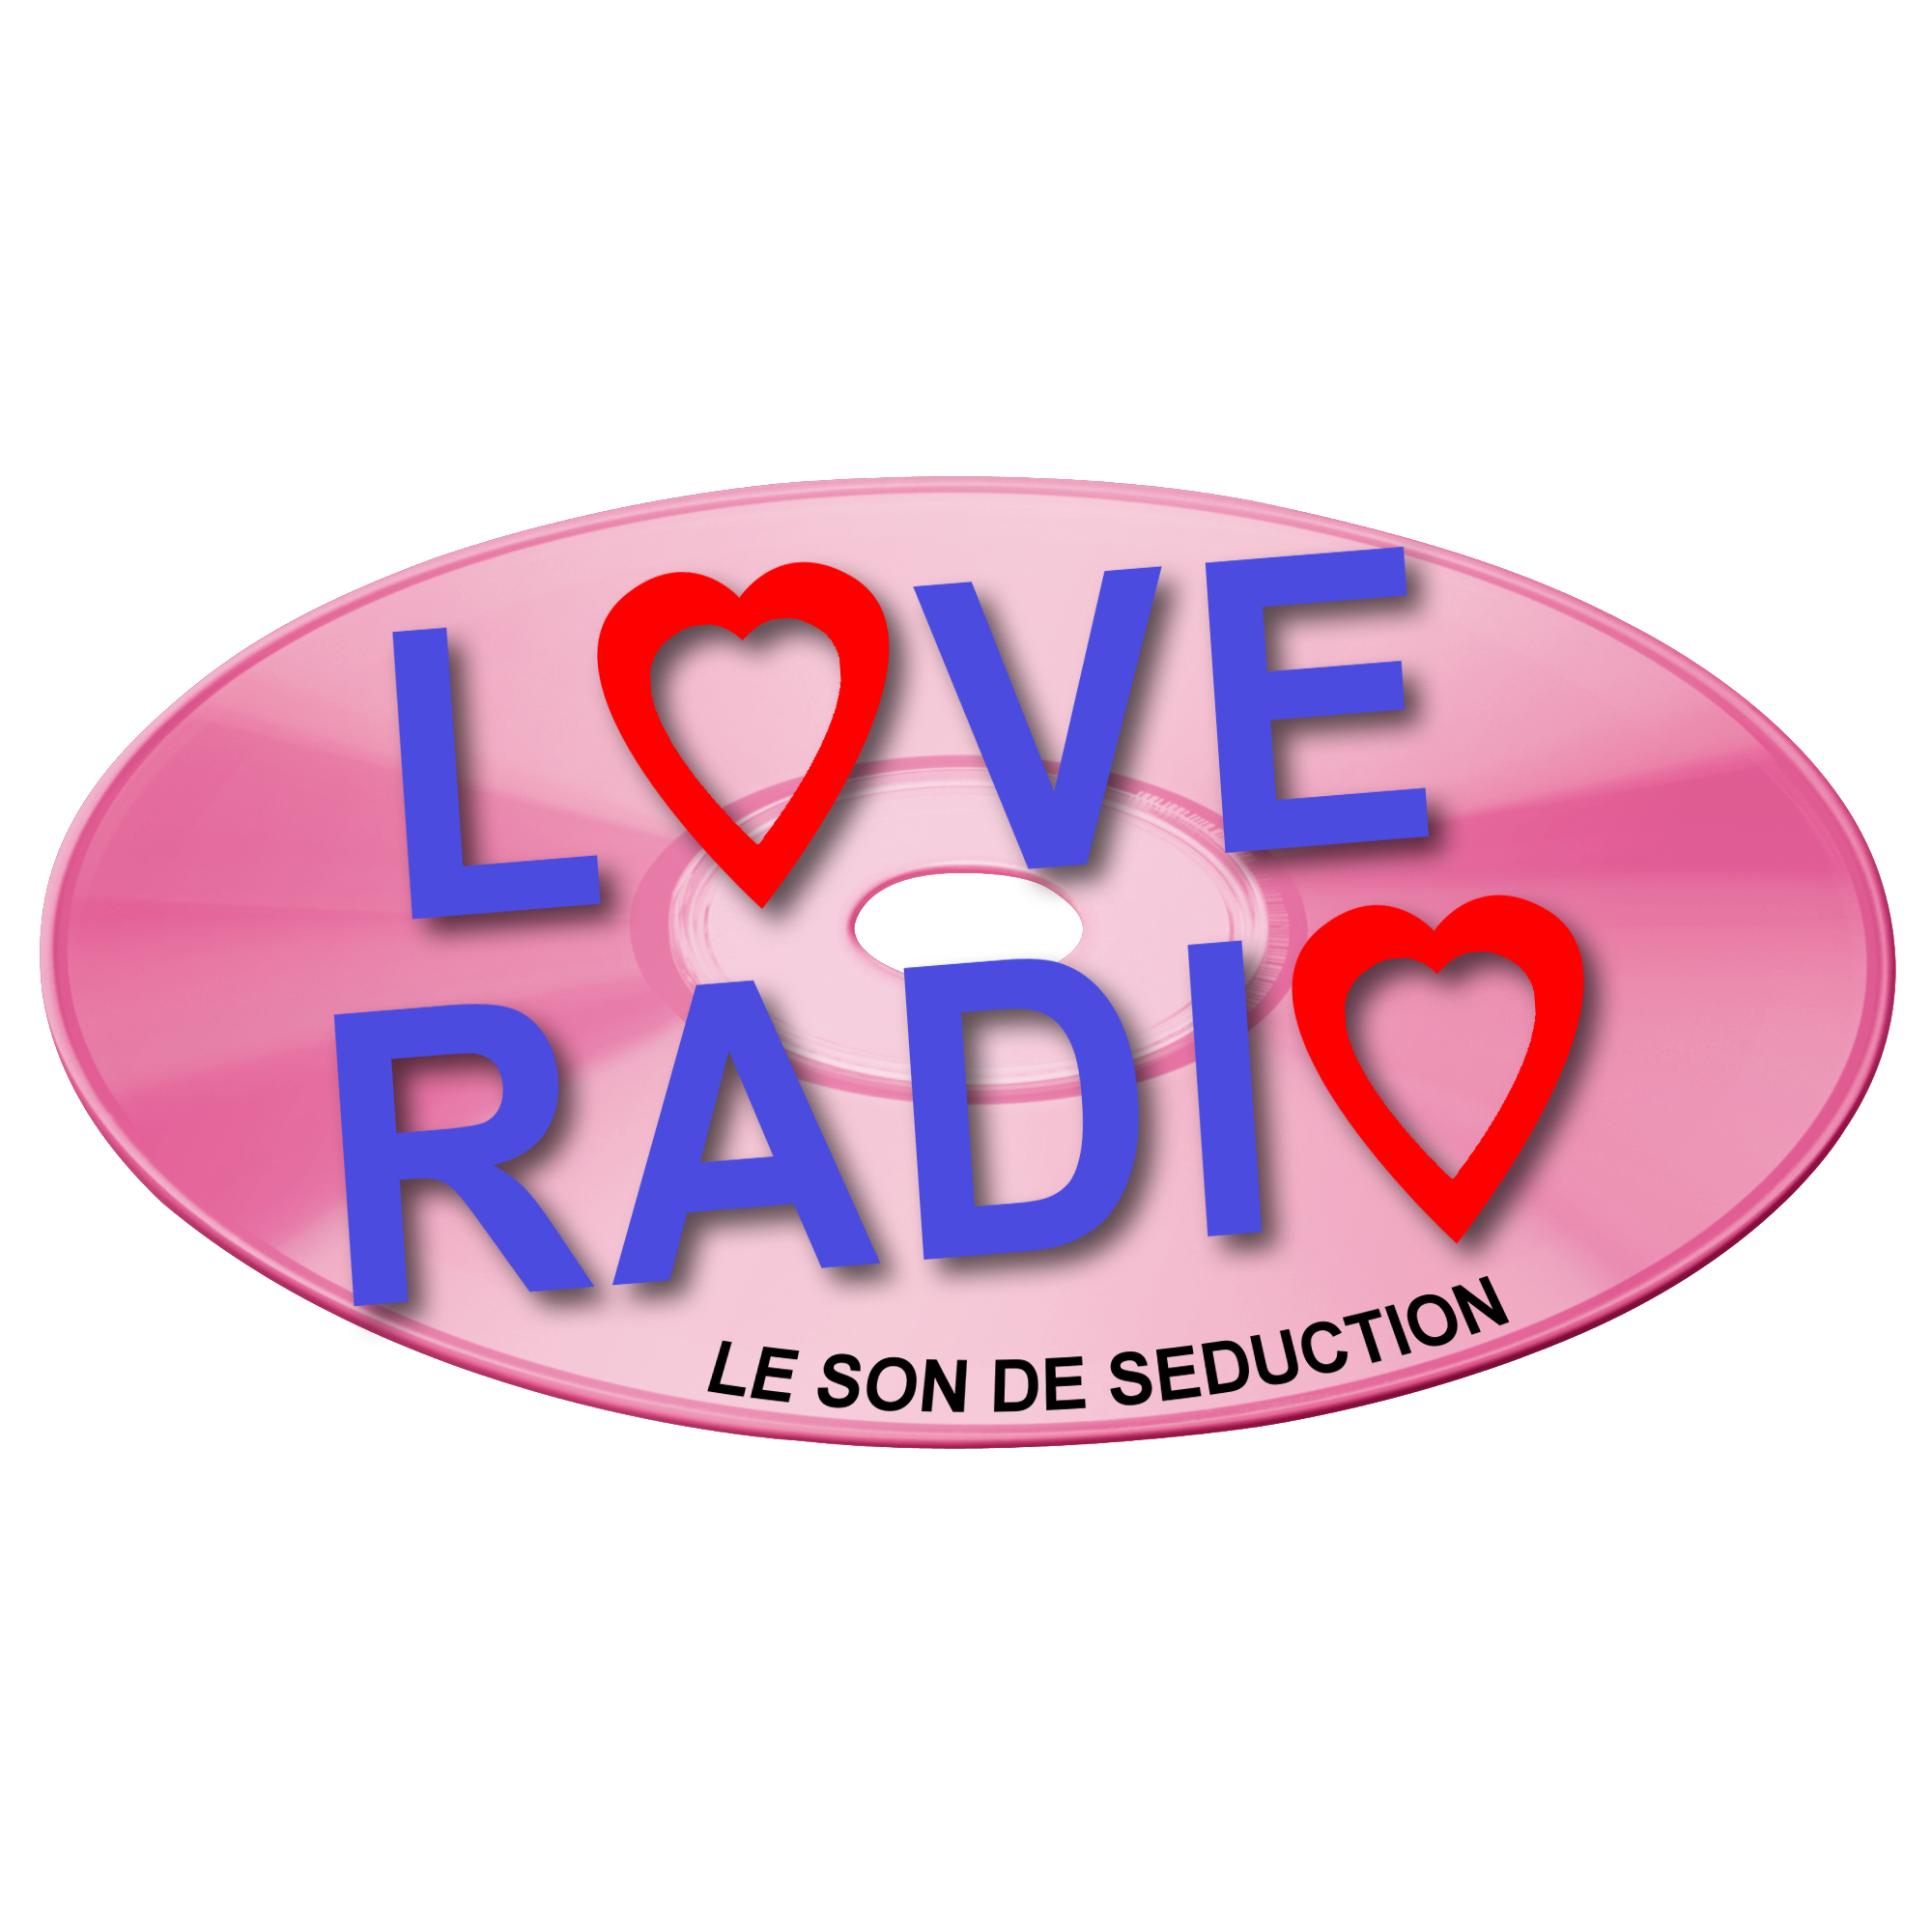 Love радио. Лав радио логотип. Любимое радио. Любовное радио.